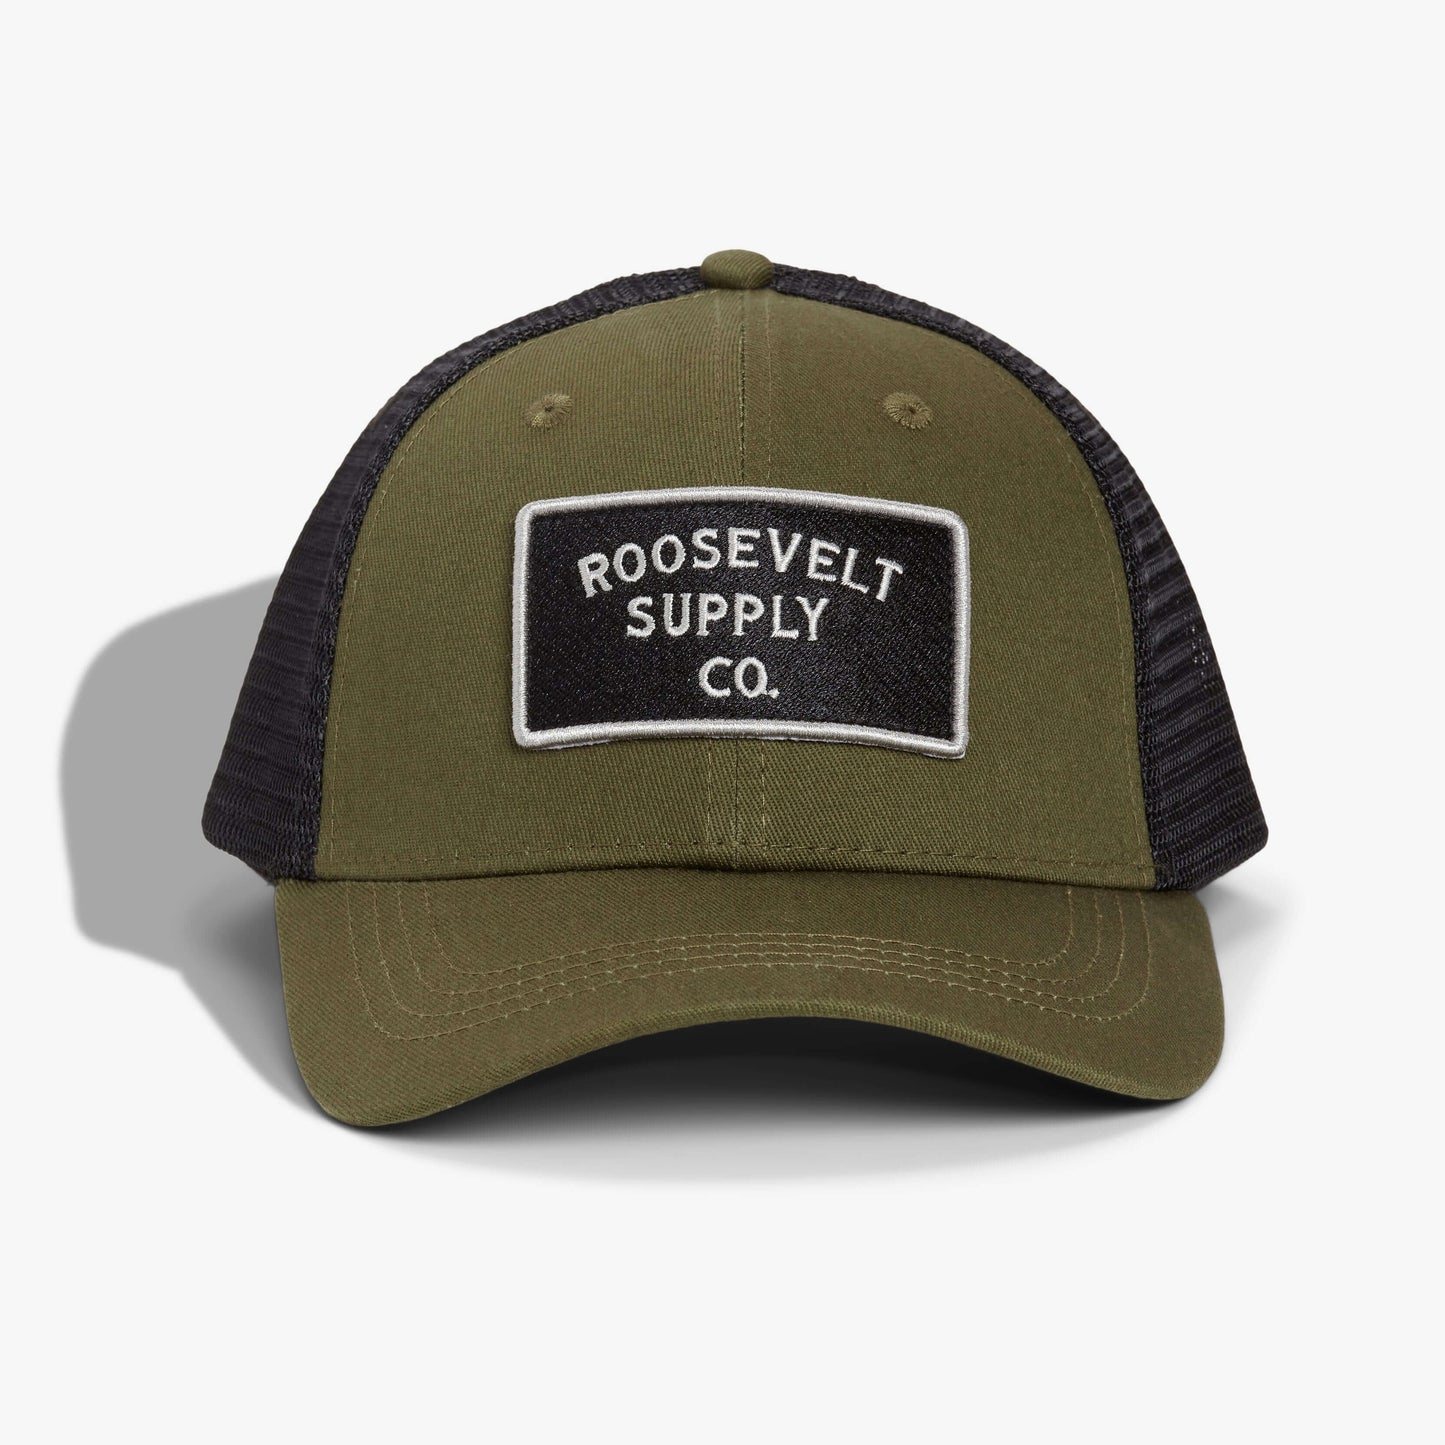 Olive Snapback Hat - Roosevelt Supply Co.